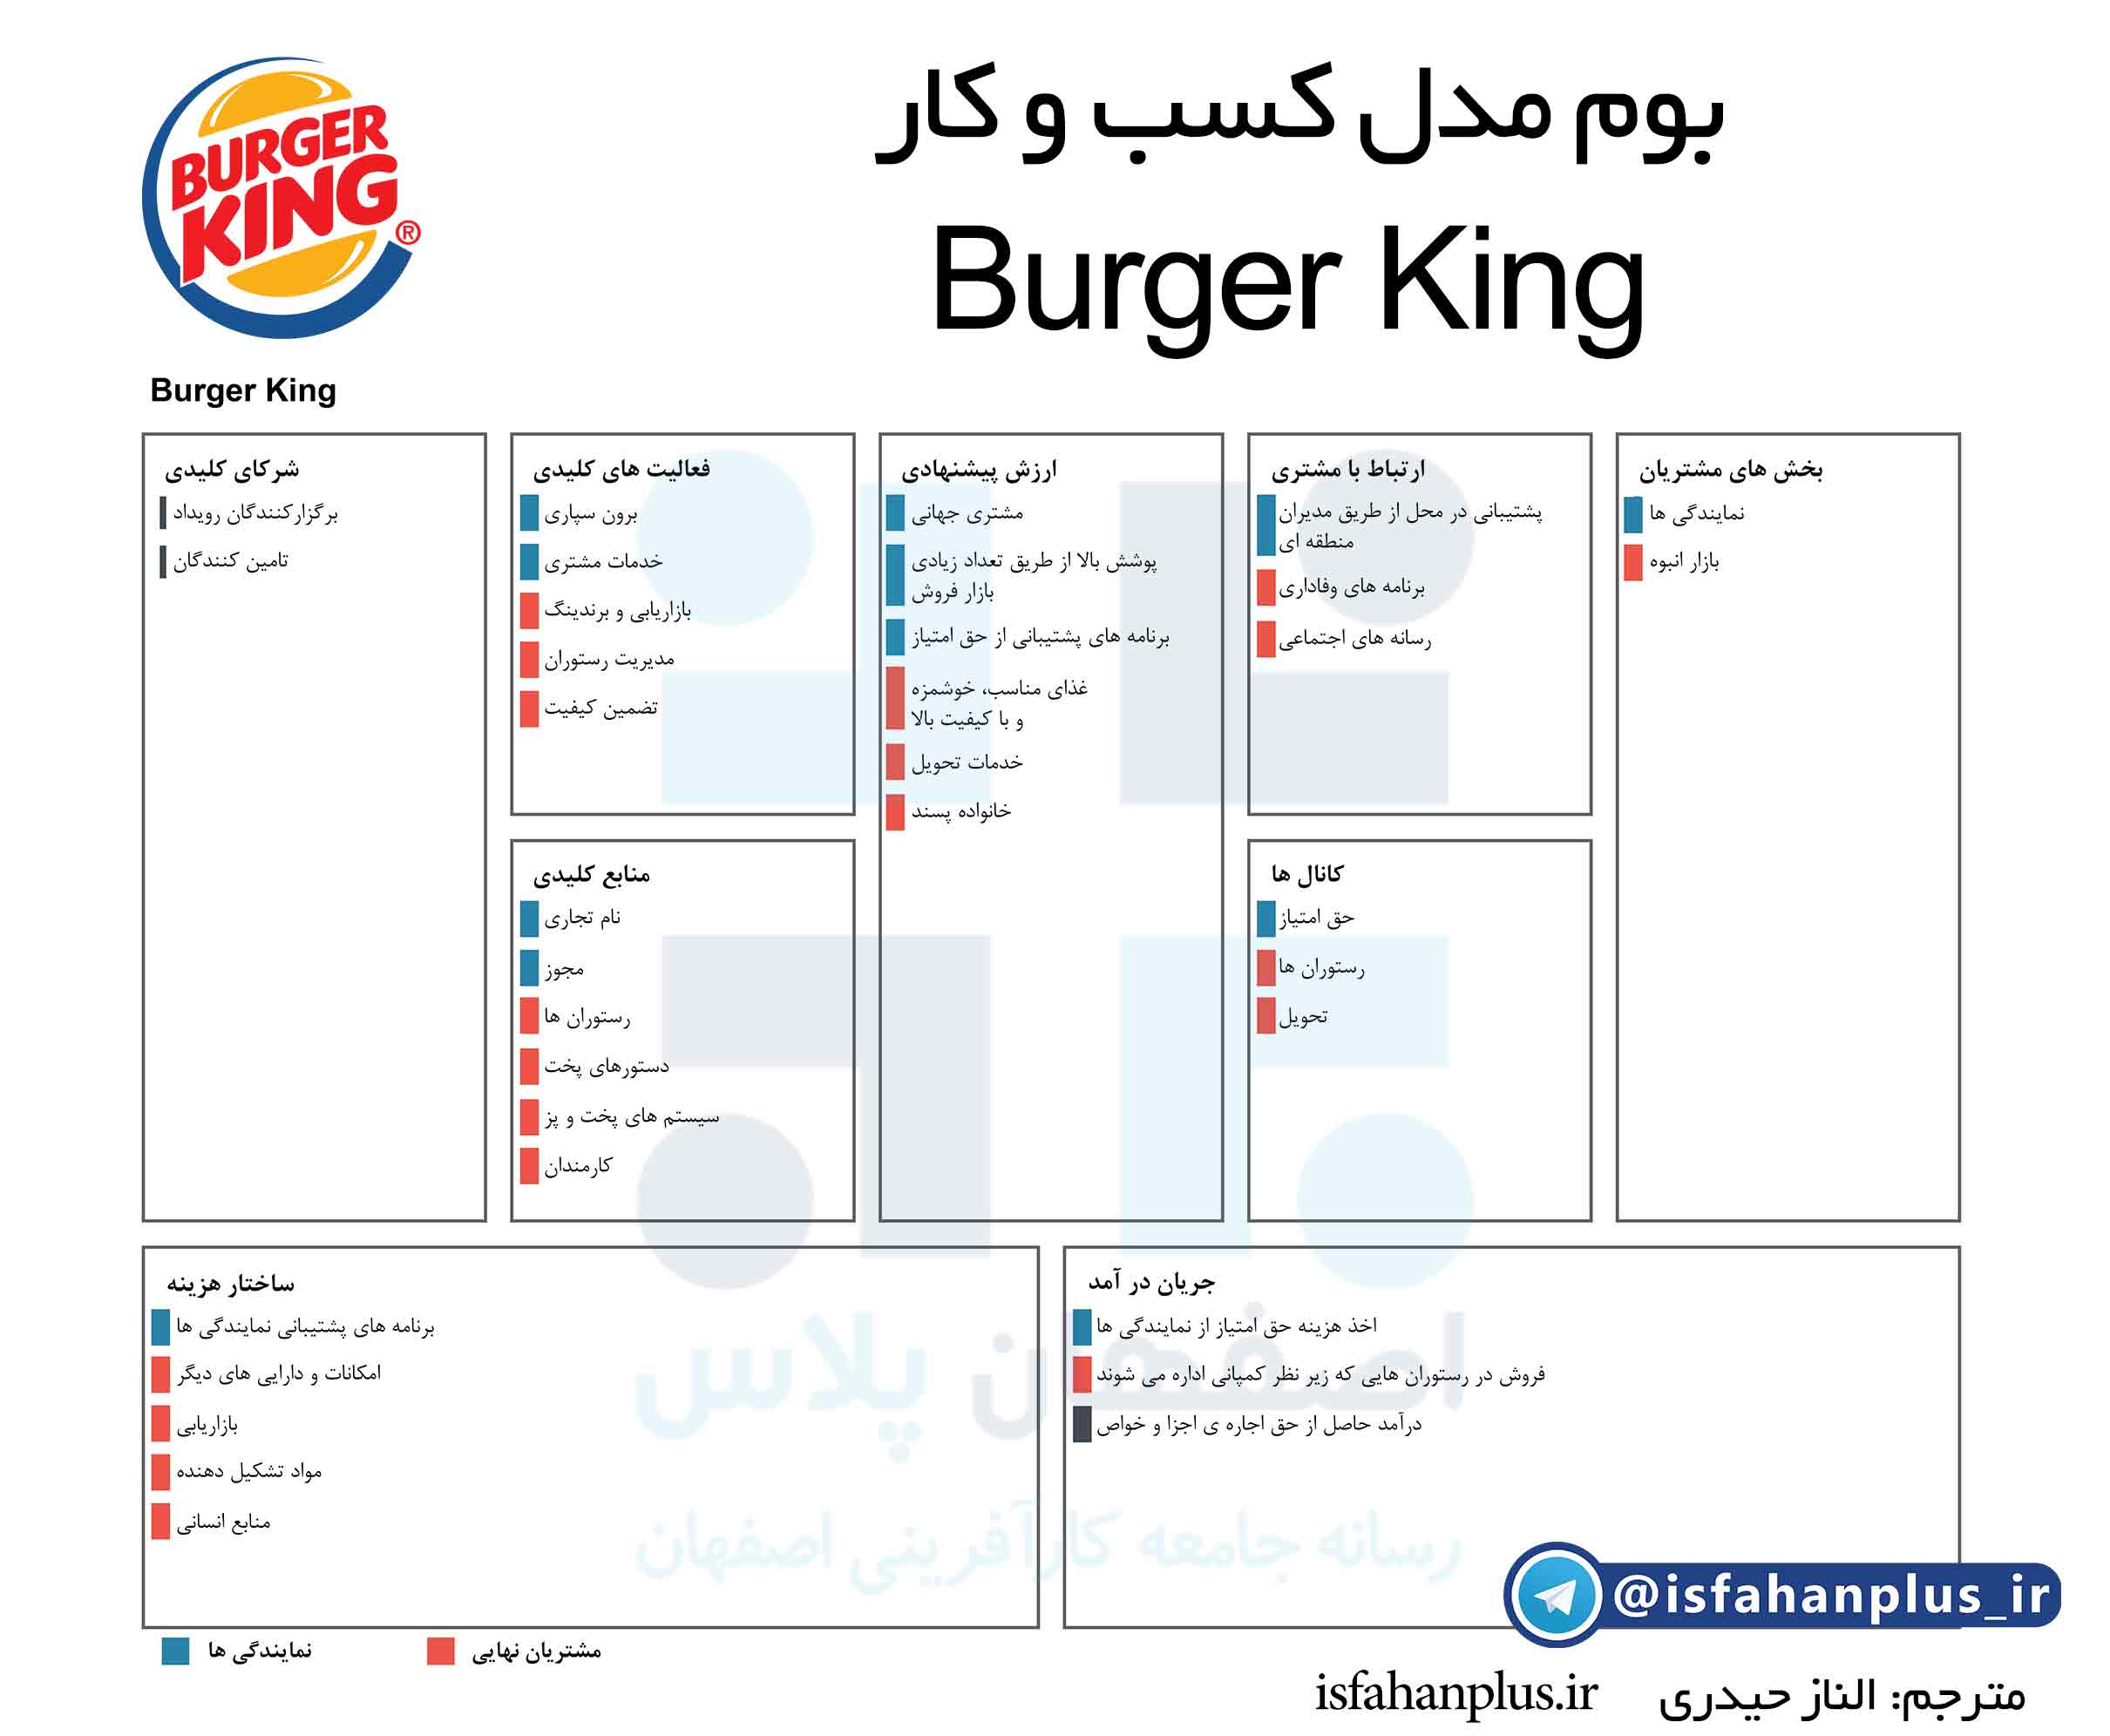 بوم مدل کسب و کار Burger King